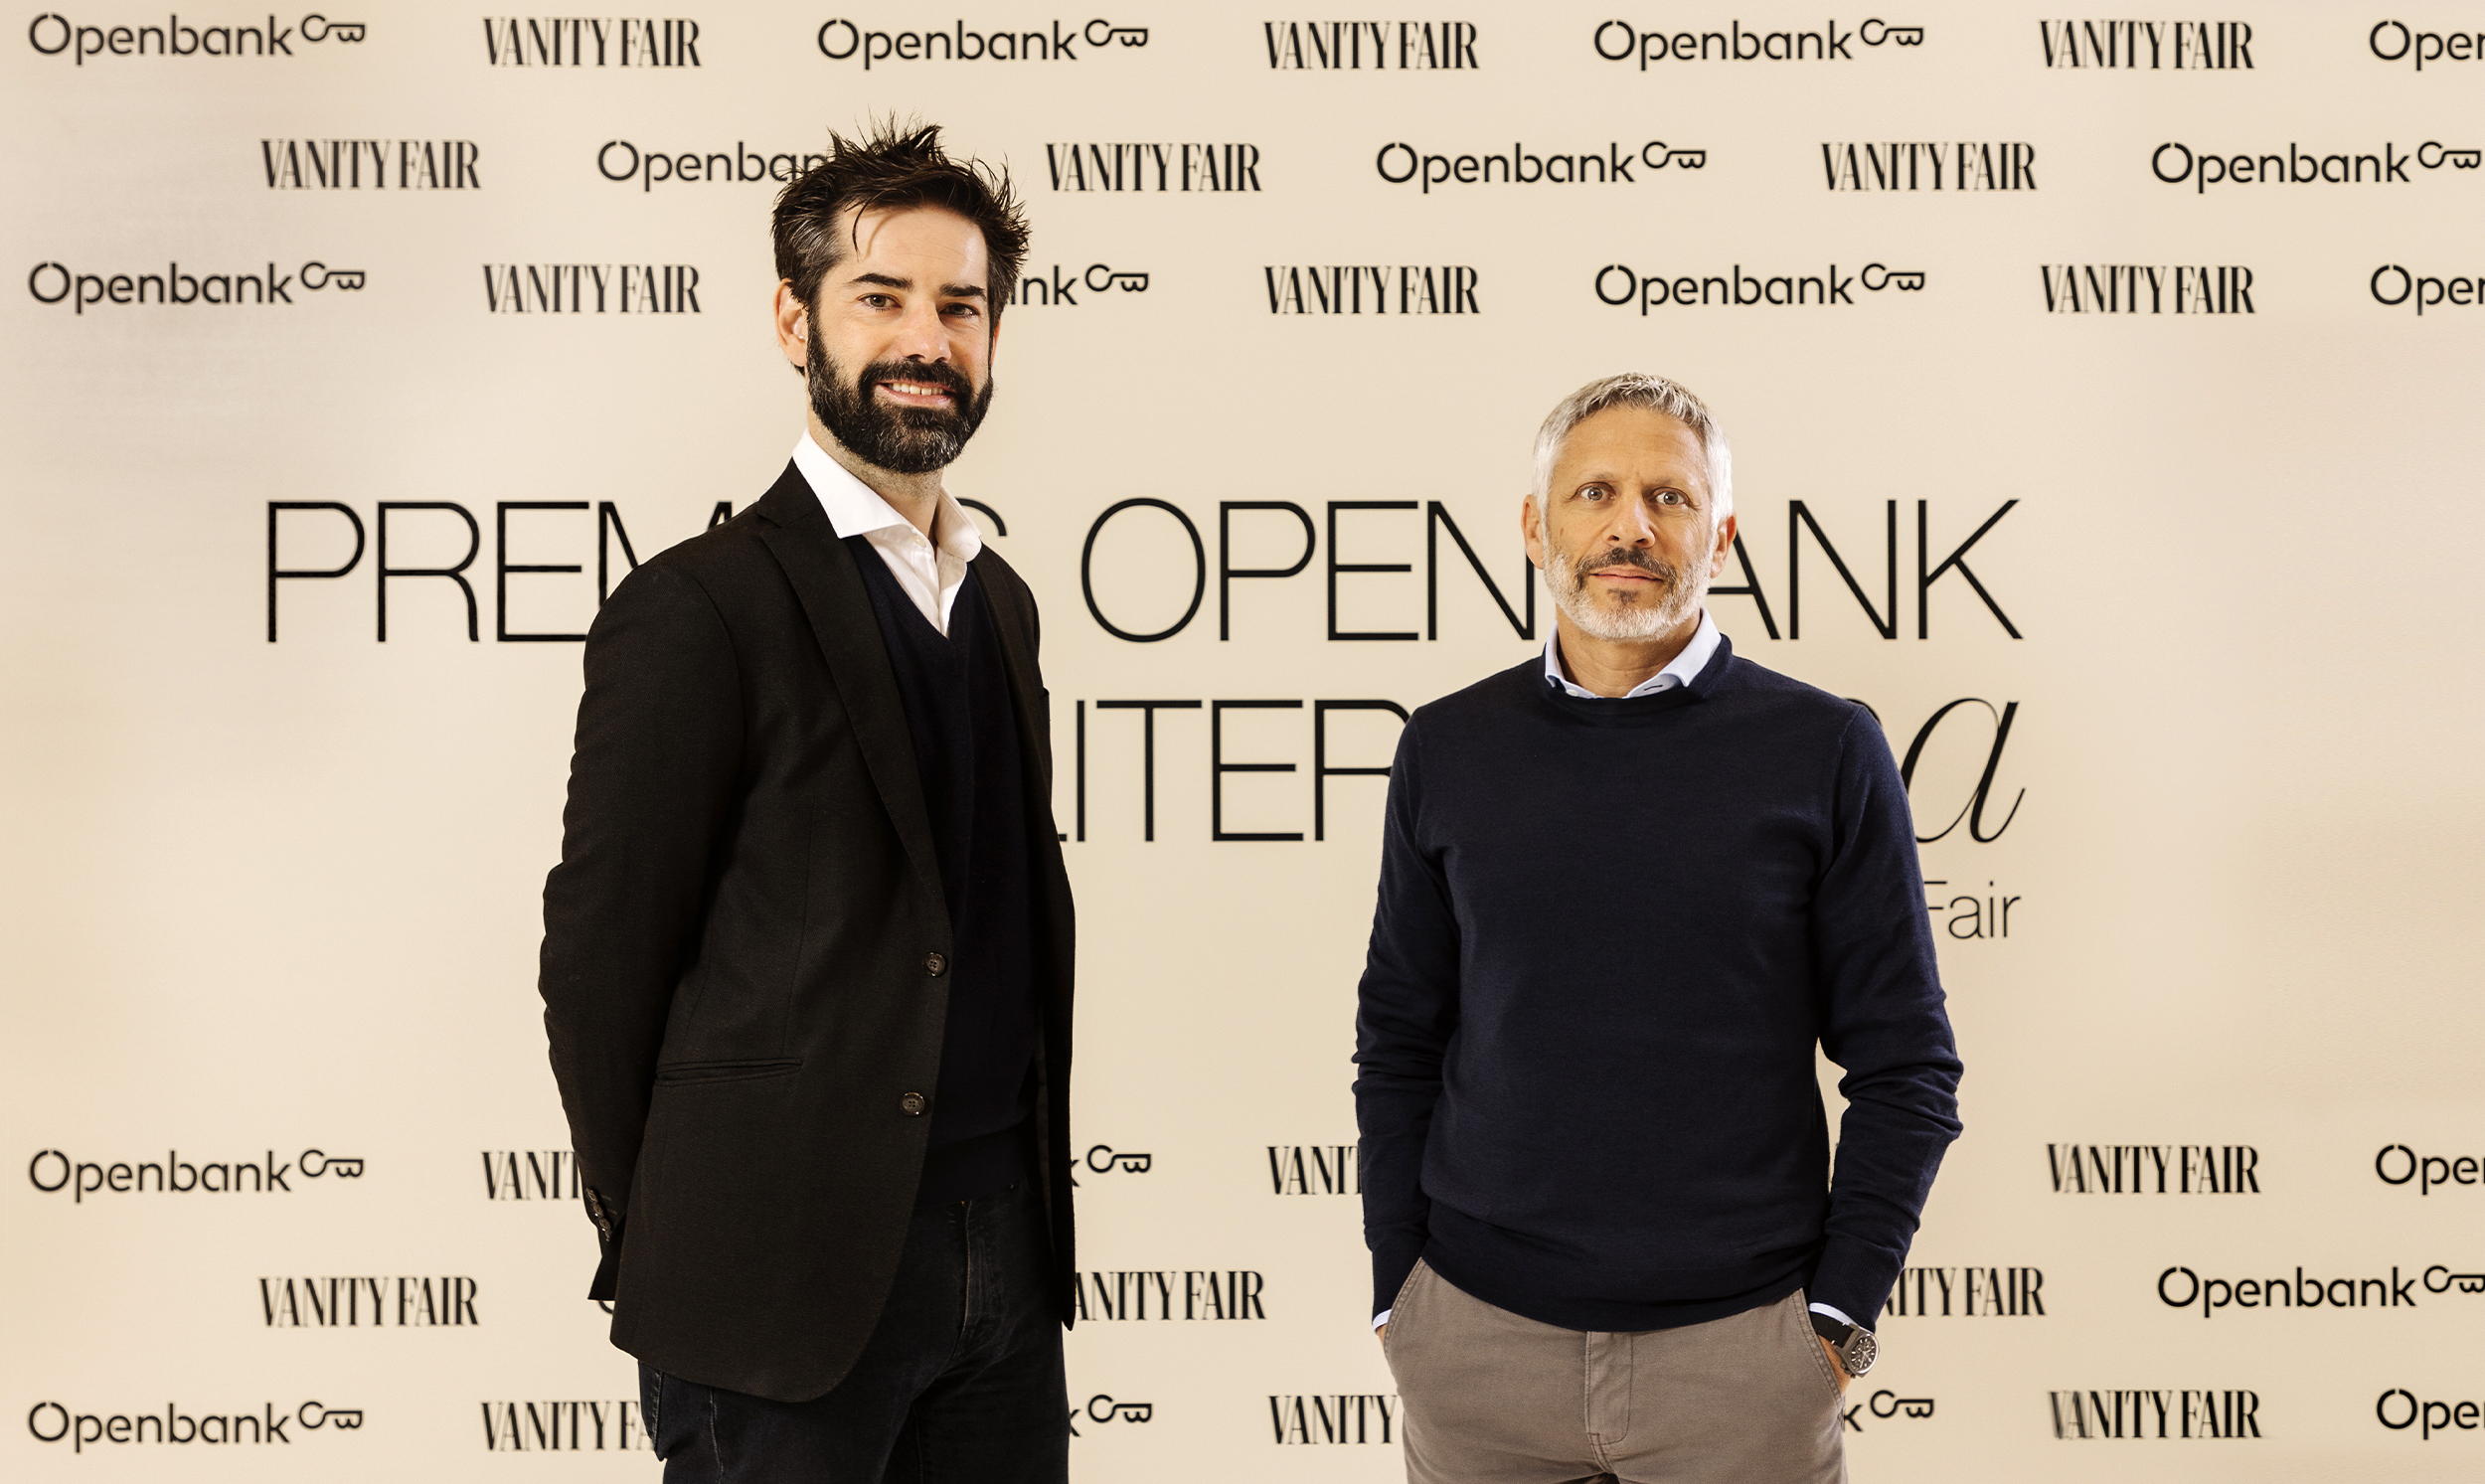 Premios de Literatura Openbank by Vanity Fair’